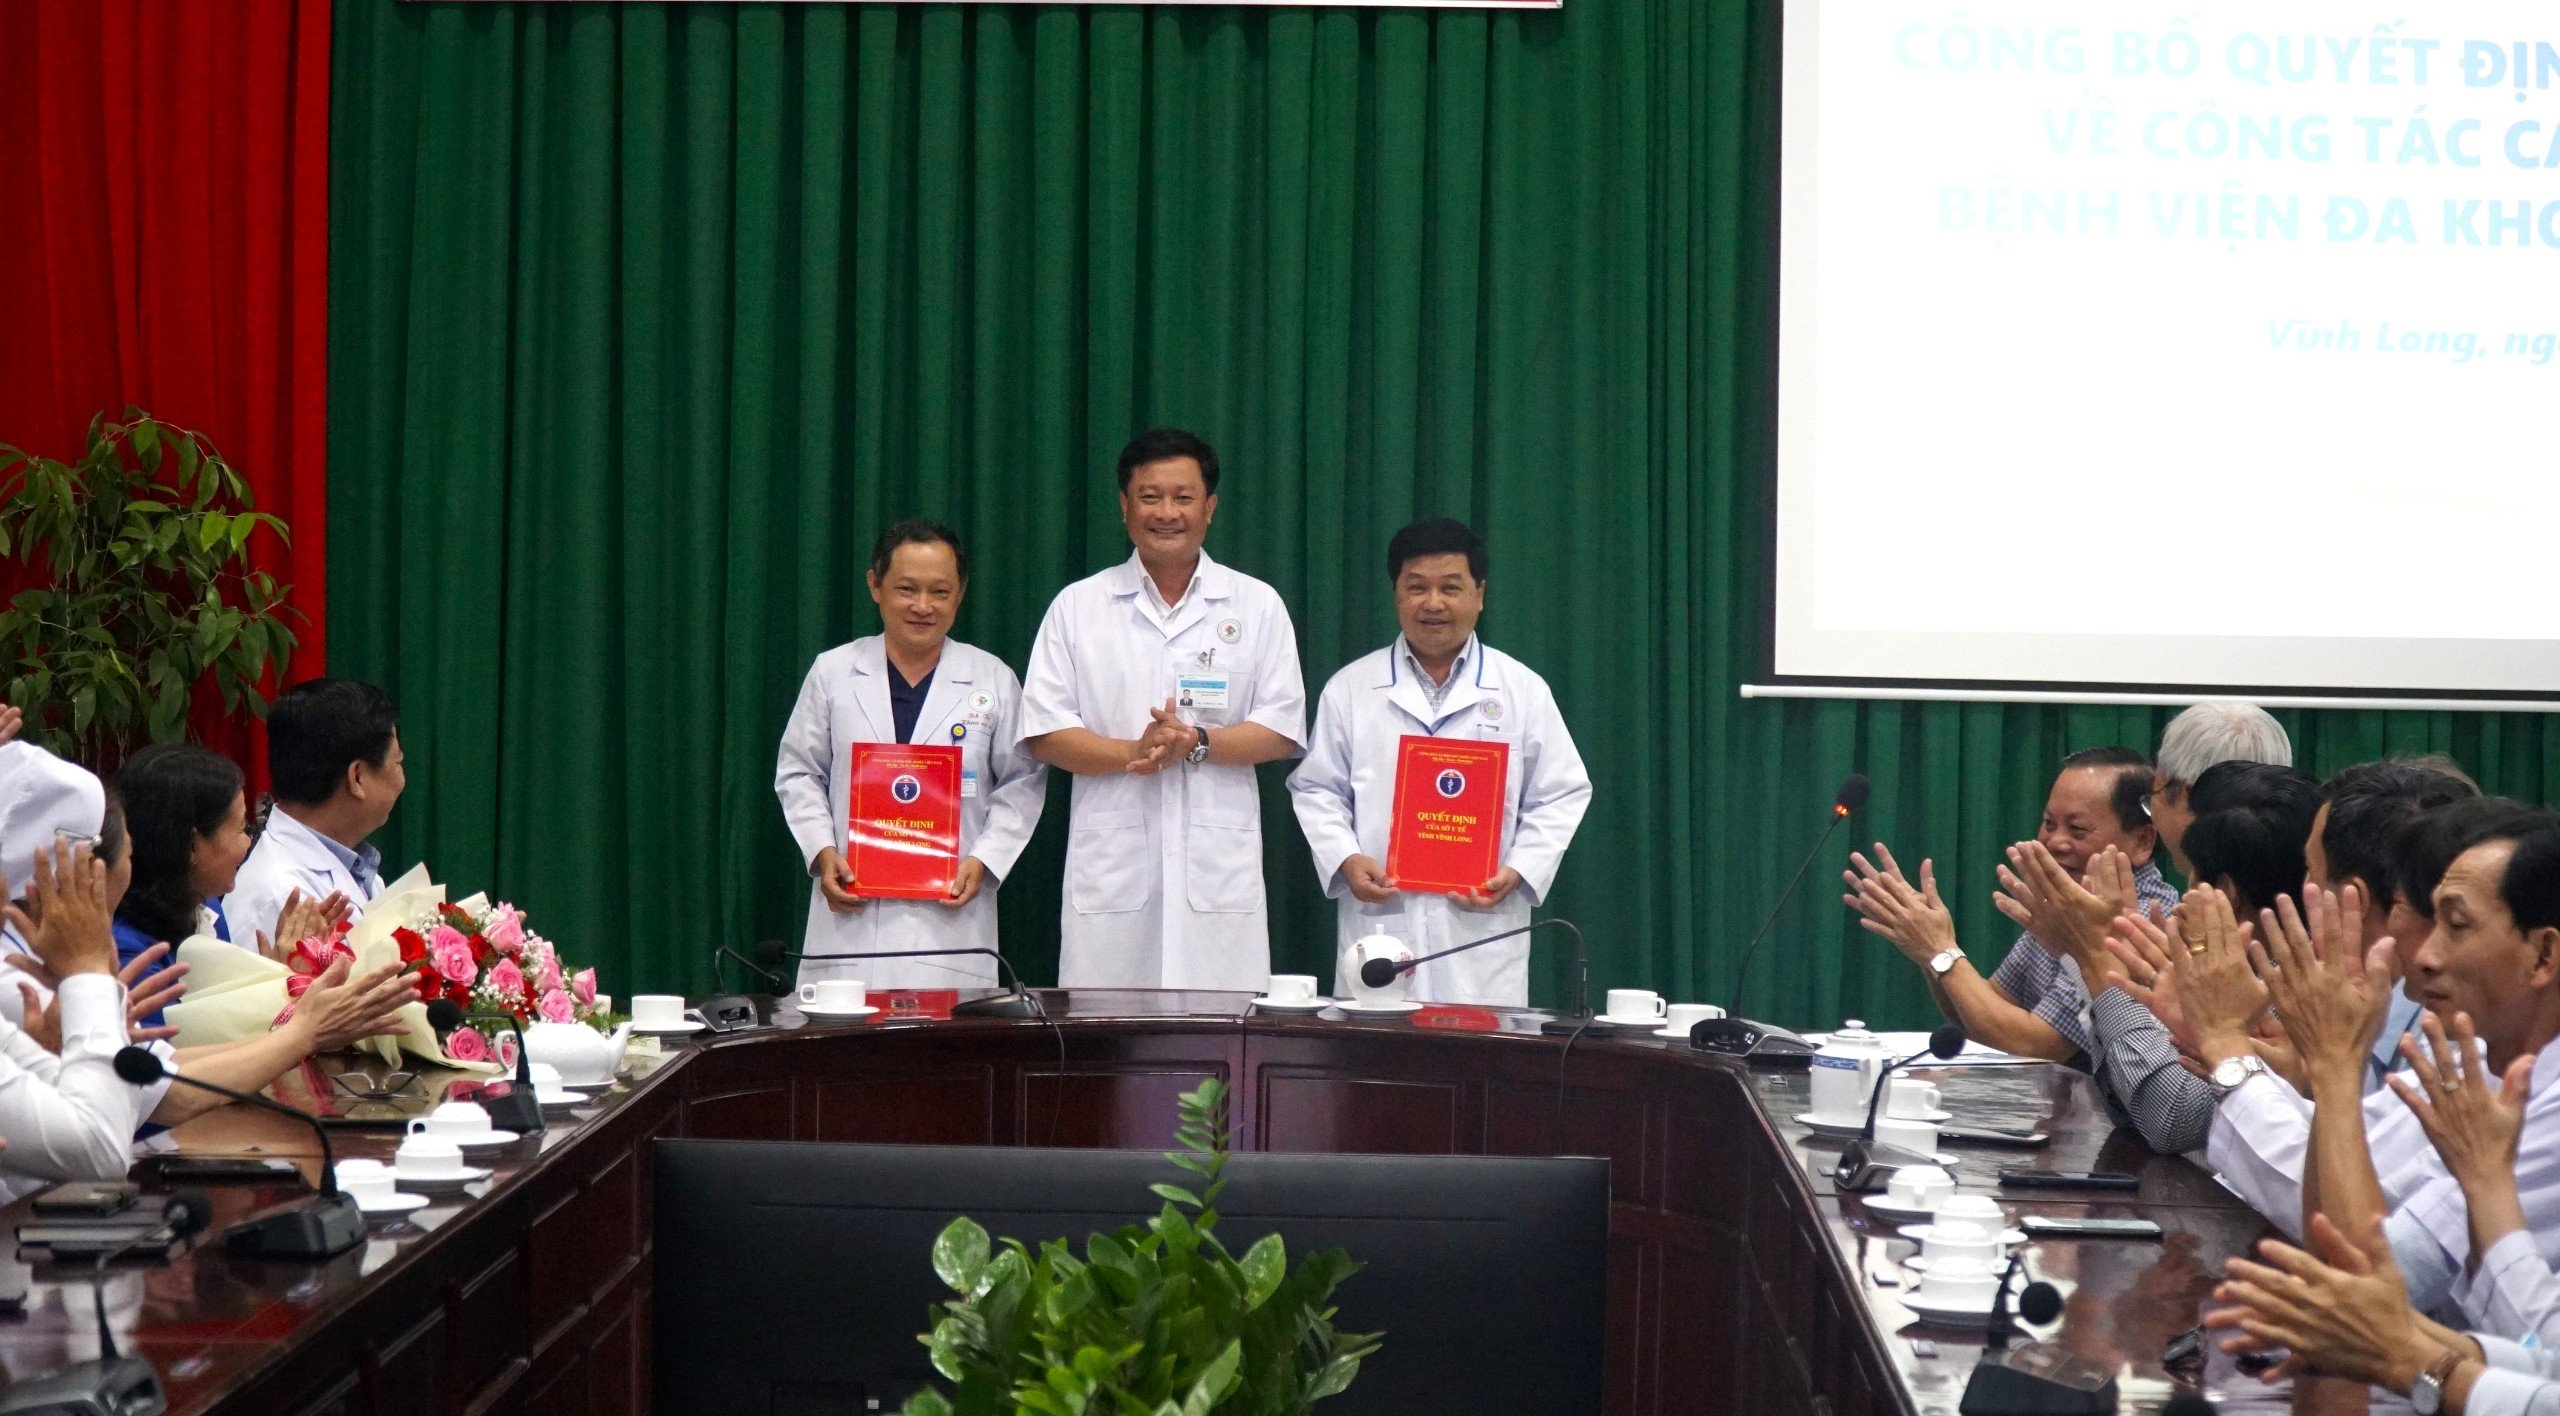 Giám đốc BVĐK Vĩnh Long Nguyễn Thanh Truyền trao quyết định bổ nhiệm đối với bác sĩ Nguyễn Trọng Thi và bác sĩ Trầm Quốc Tuấn.